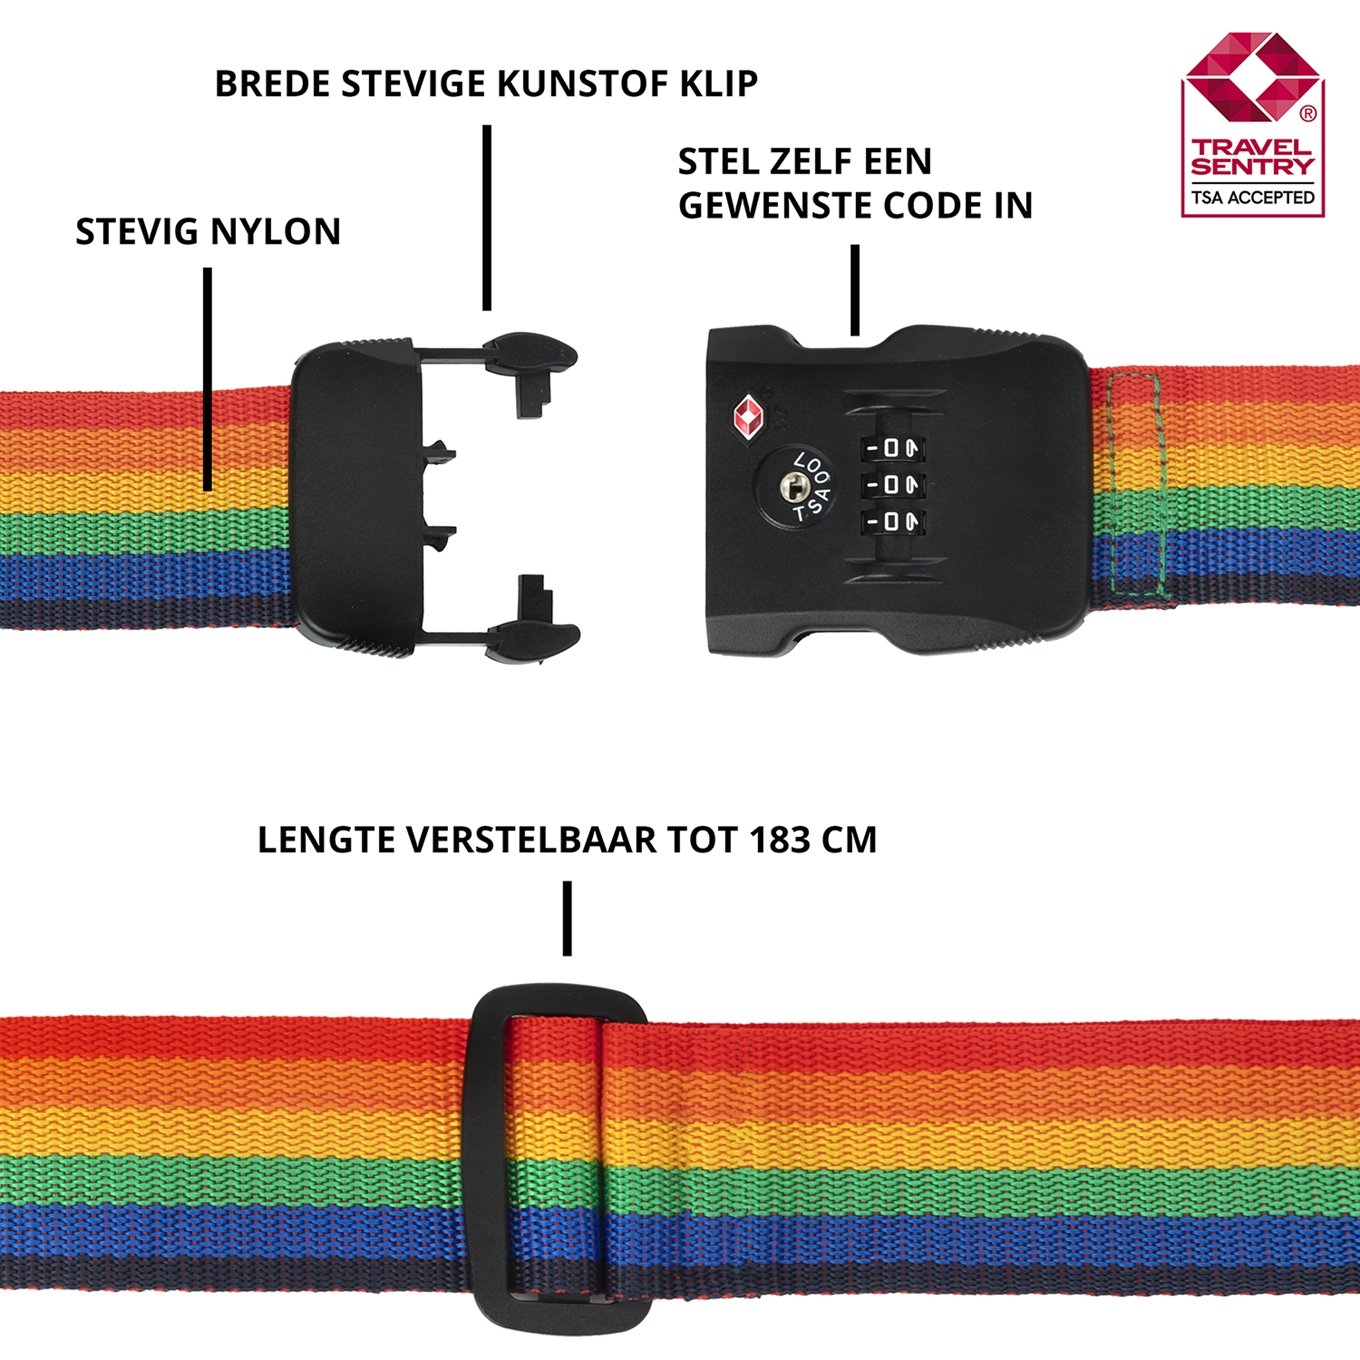 Wrok stortbui bitter CarryOn Accessoires TSA Kofferriem rainbow | Travelbags.nl